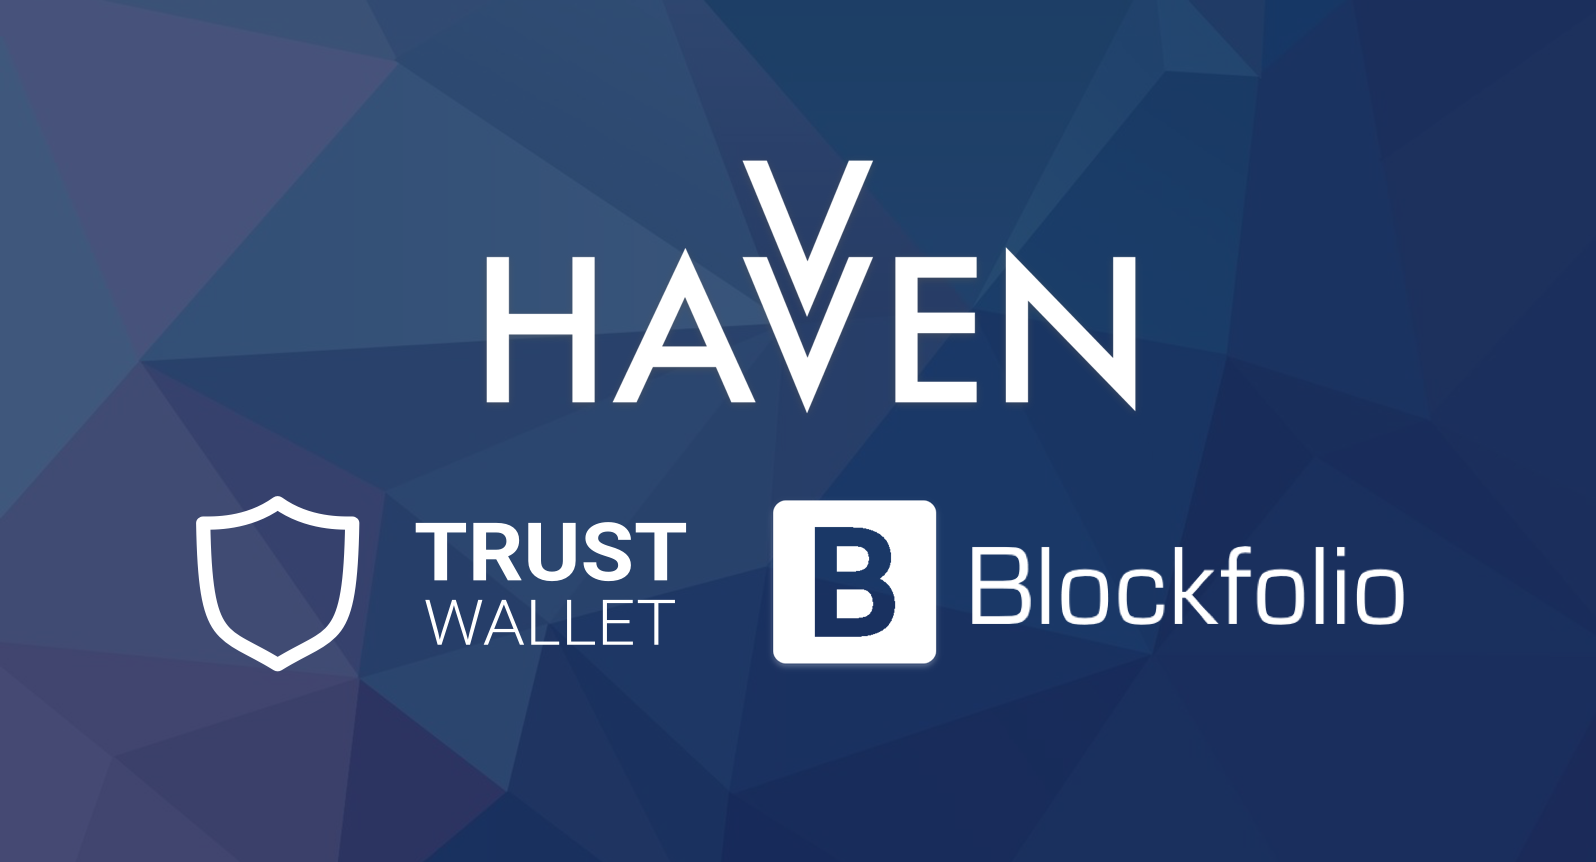 Havven is now on TrustWallet, BlockFolio, and CoinMarketCap